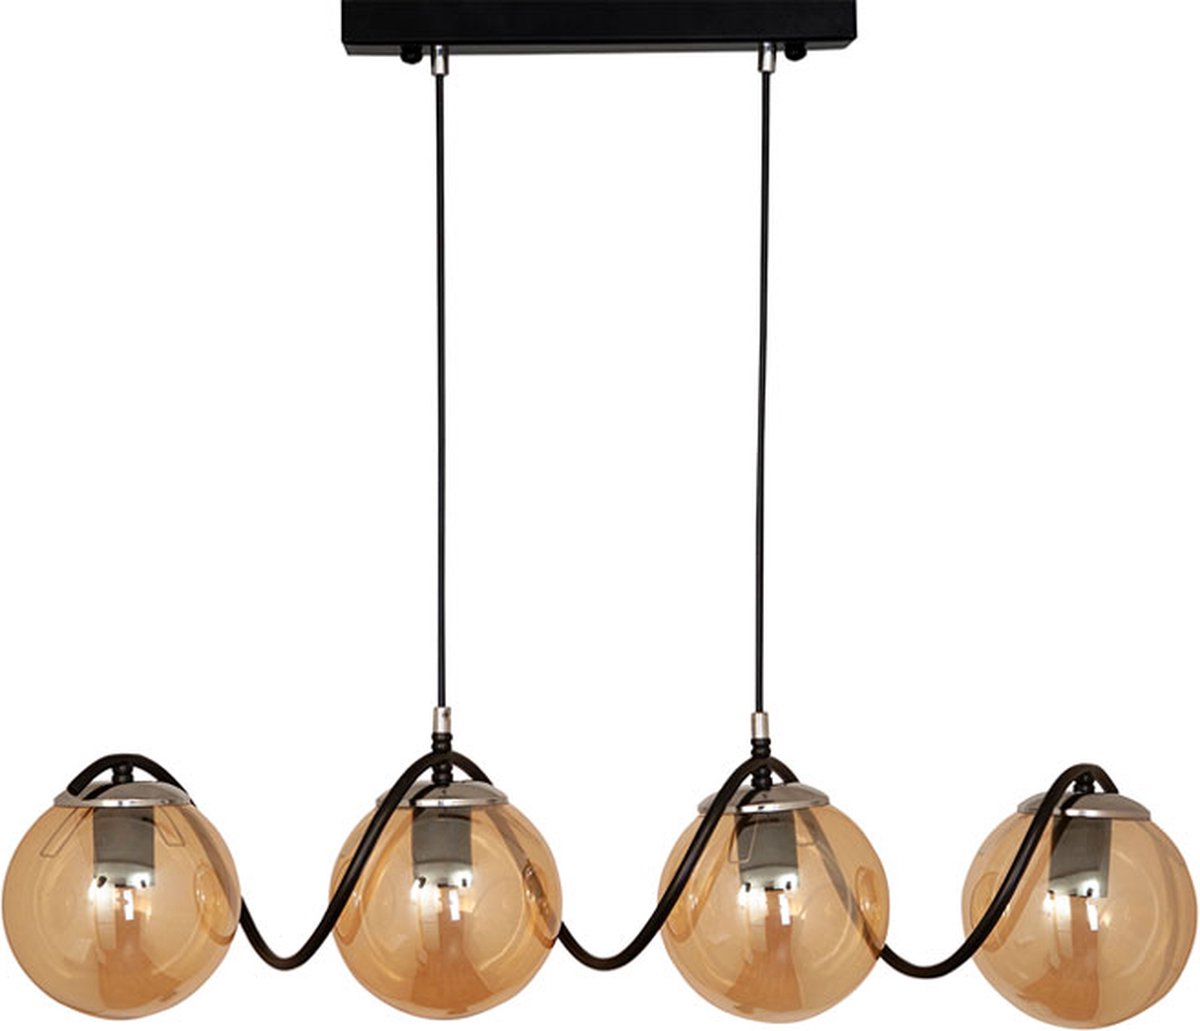 Chesto Delta Honey Black - Luxe Industriële Hanglamp - 4 Glazen Bollen Honinggoud - Eetkamer, Woonkamer